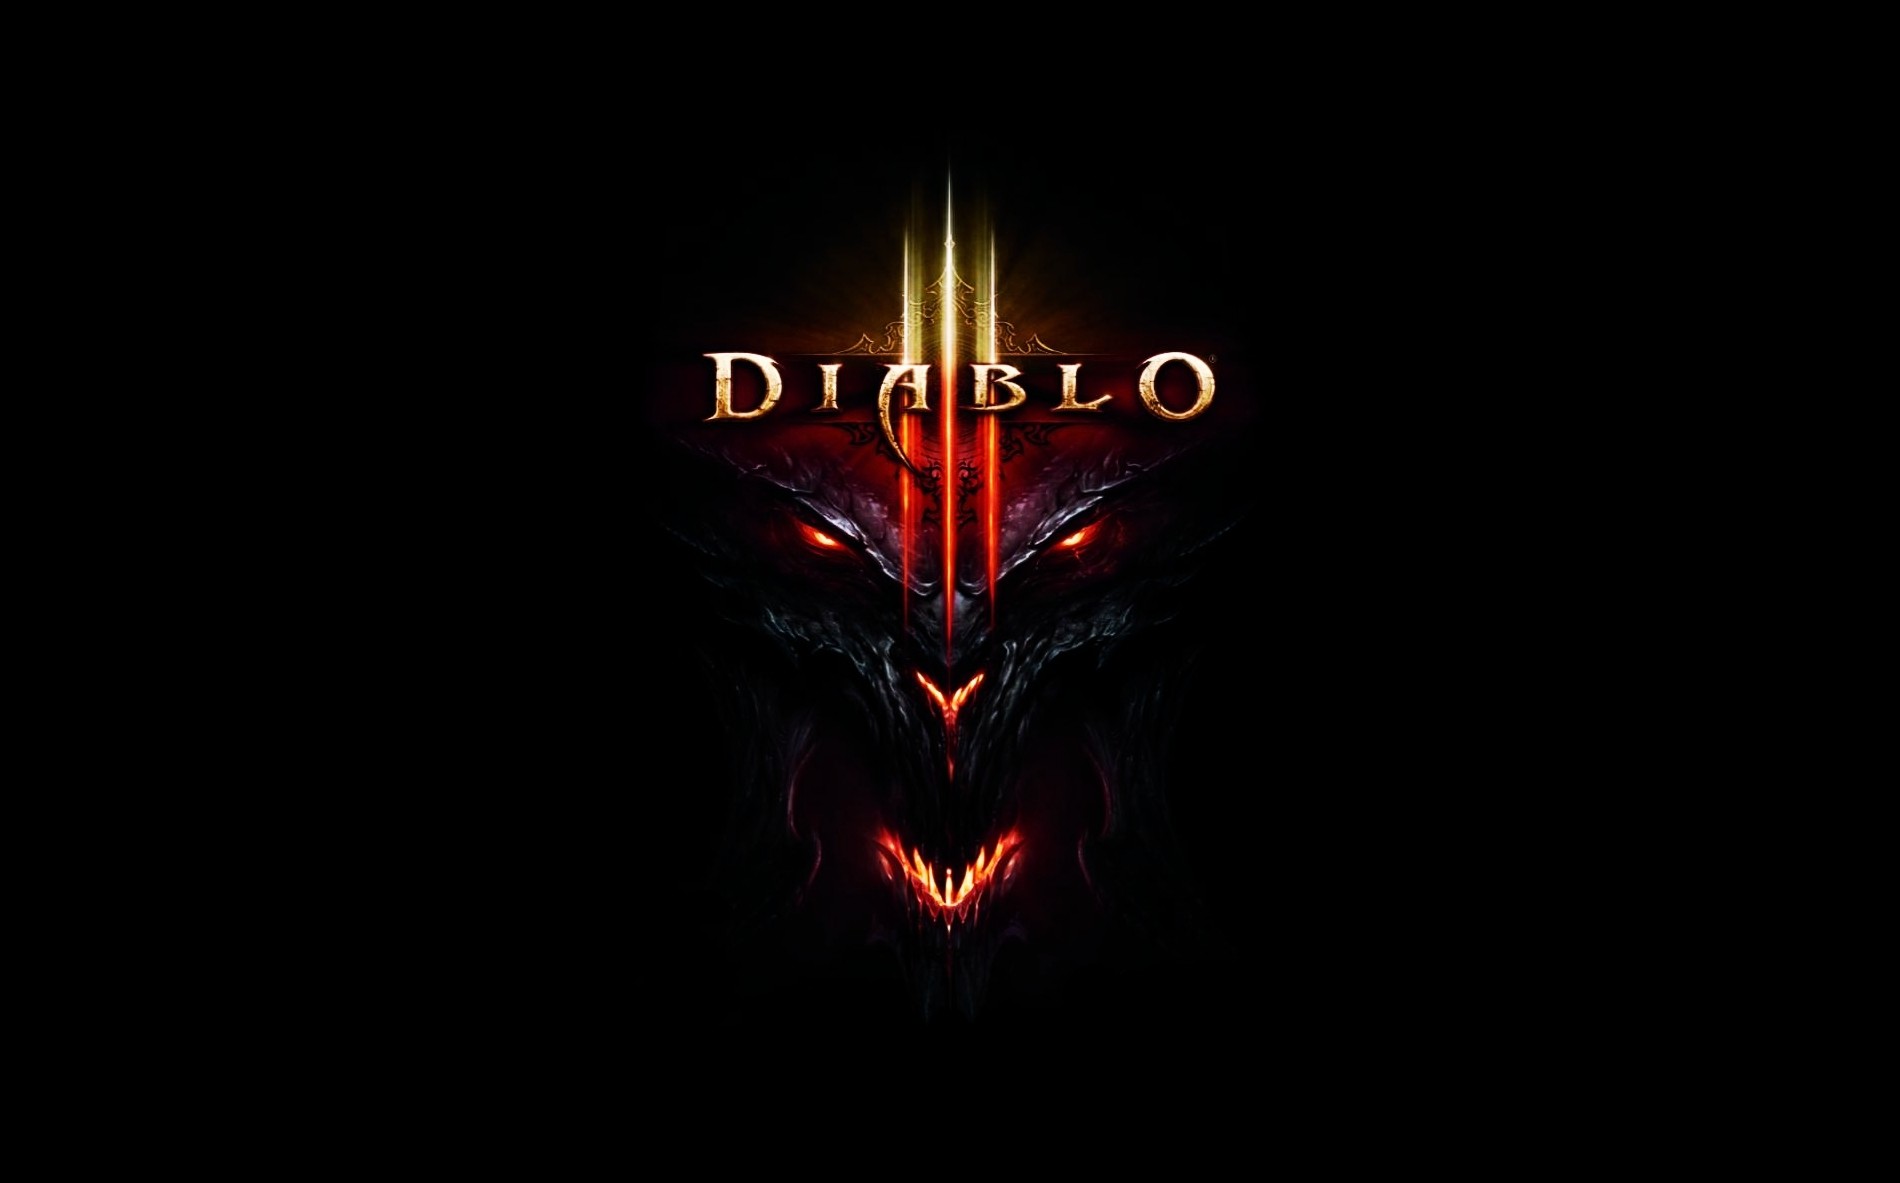 General 1900x1183 Diablo video games Diablo III video game art simple background demon glowing eyes PC gaming black background